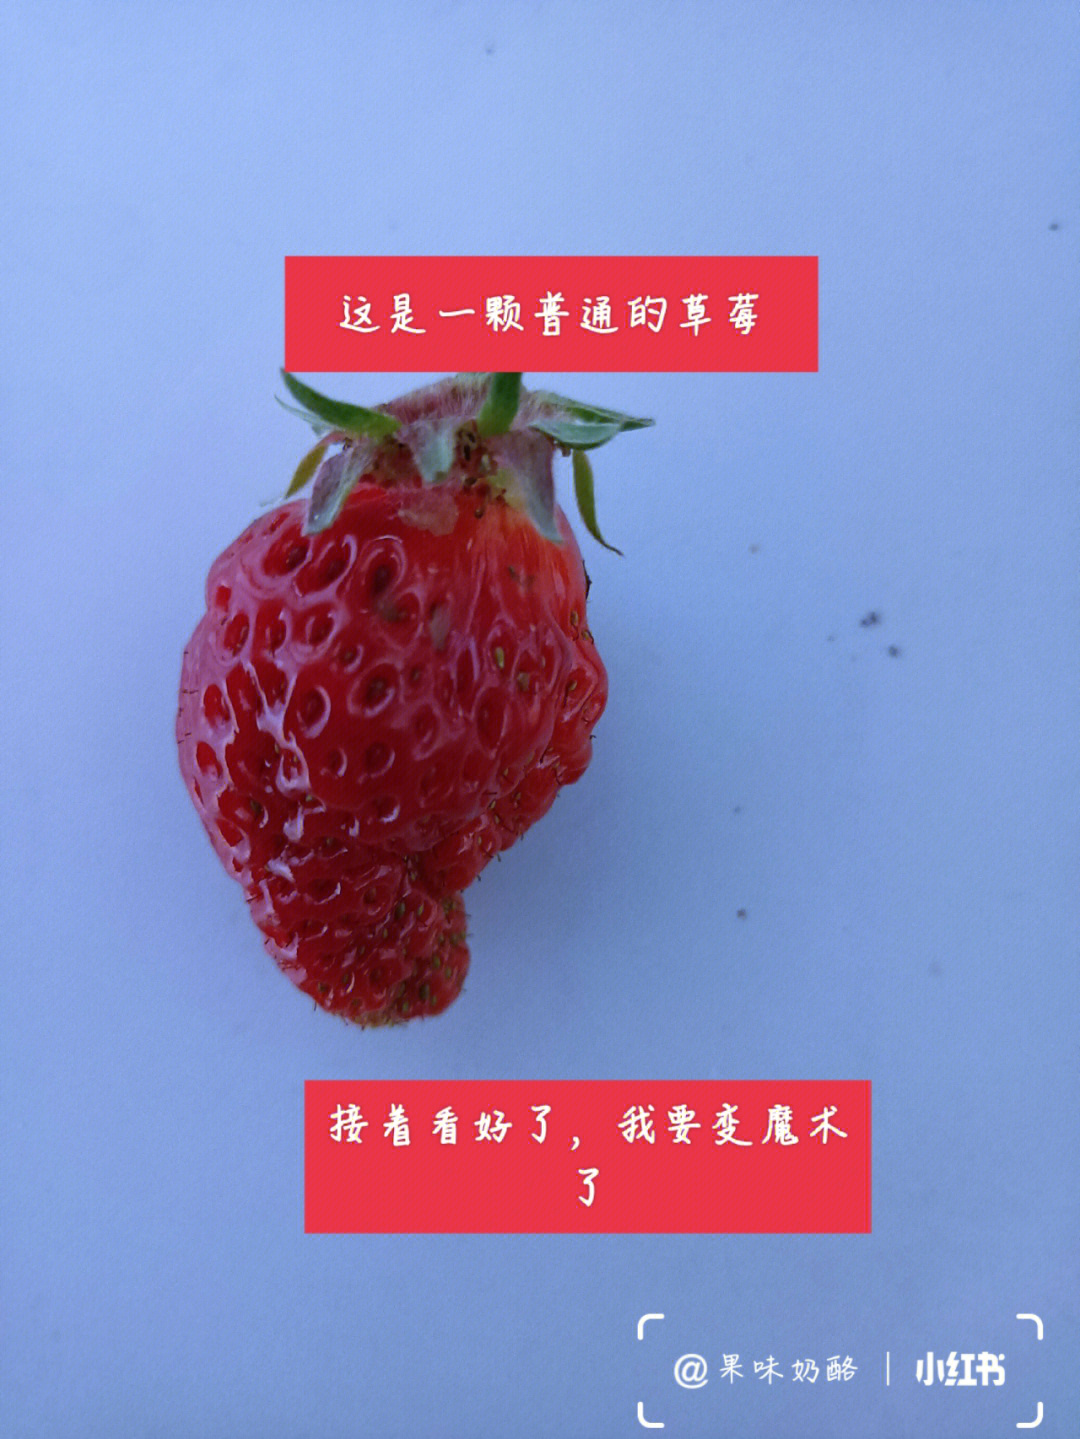 耽误你30秒,所以你喜欢吃什么草莓?